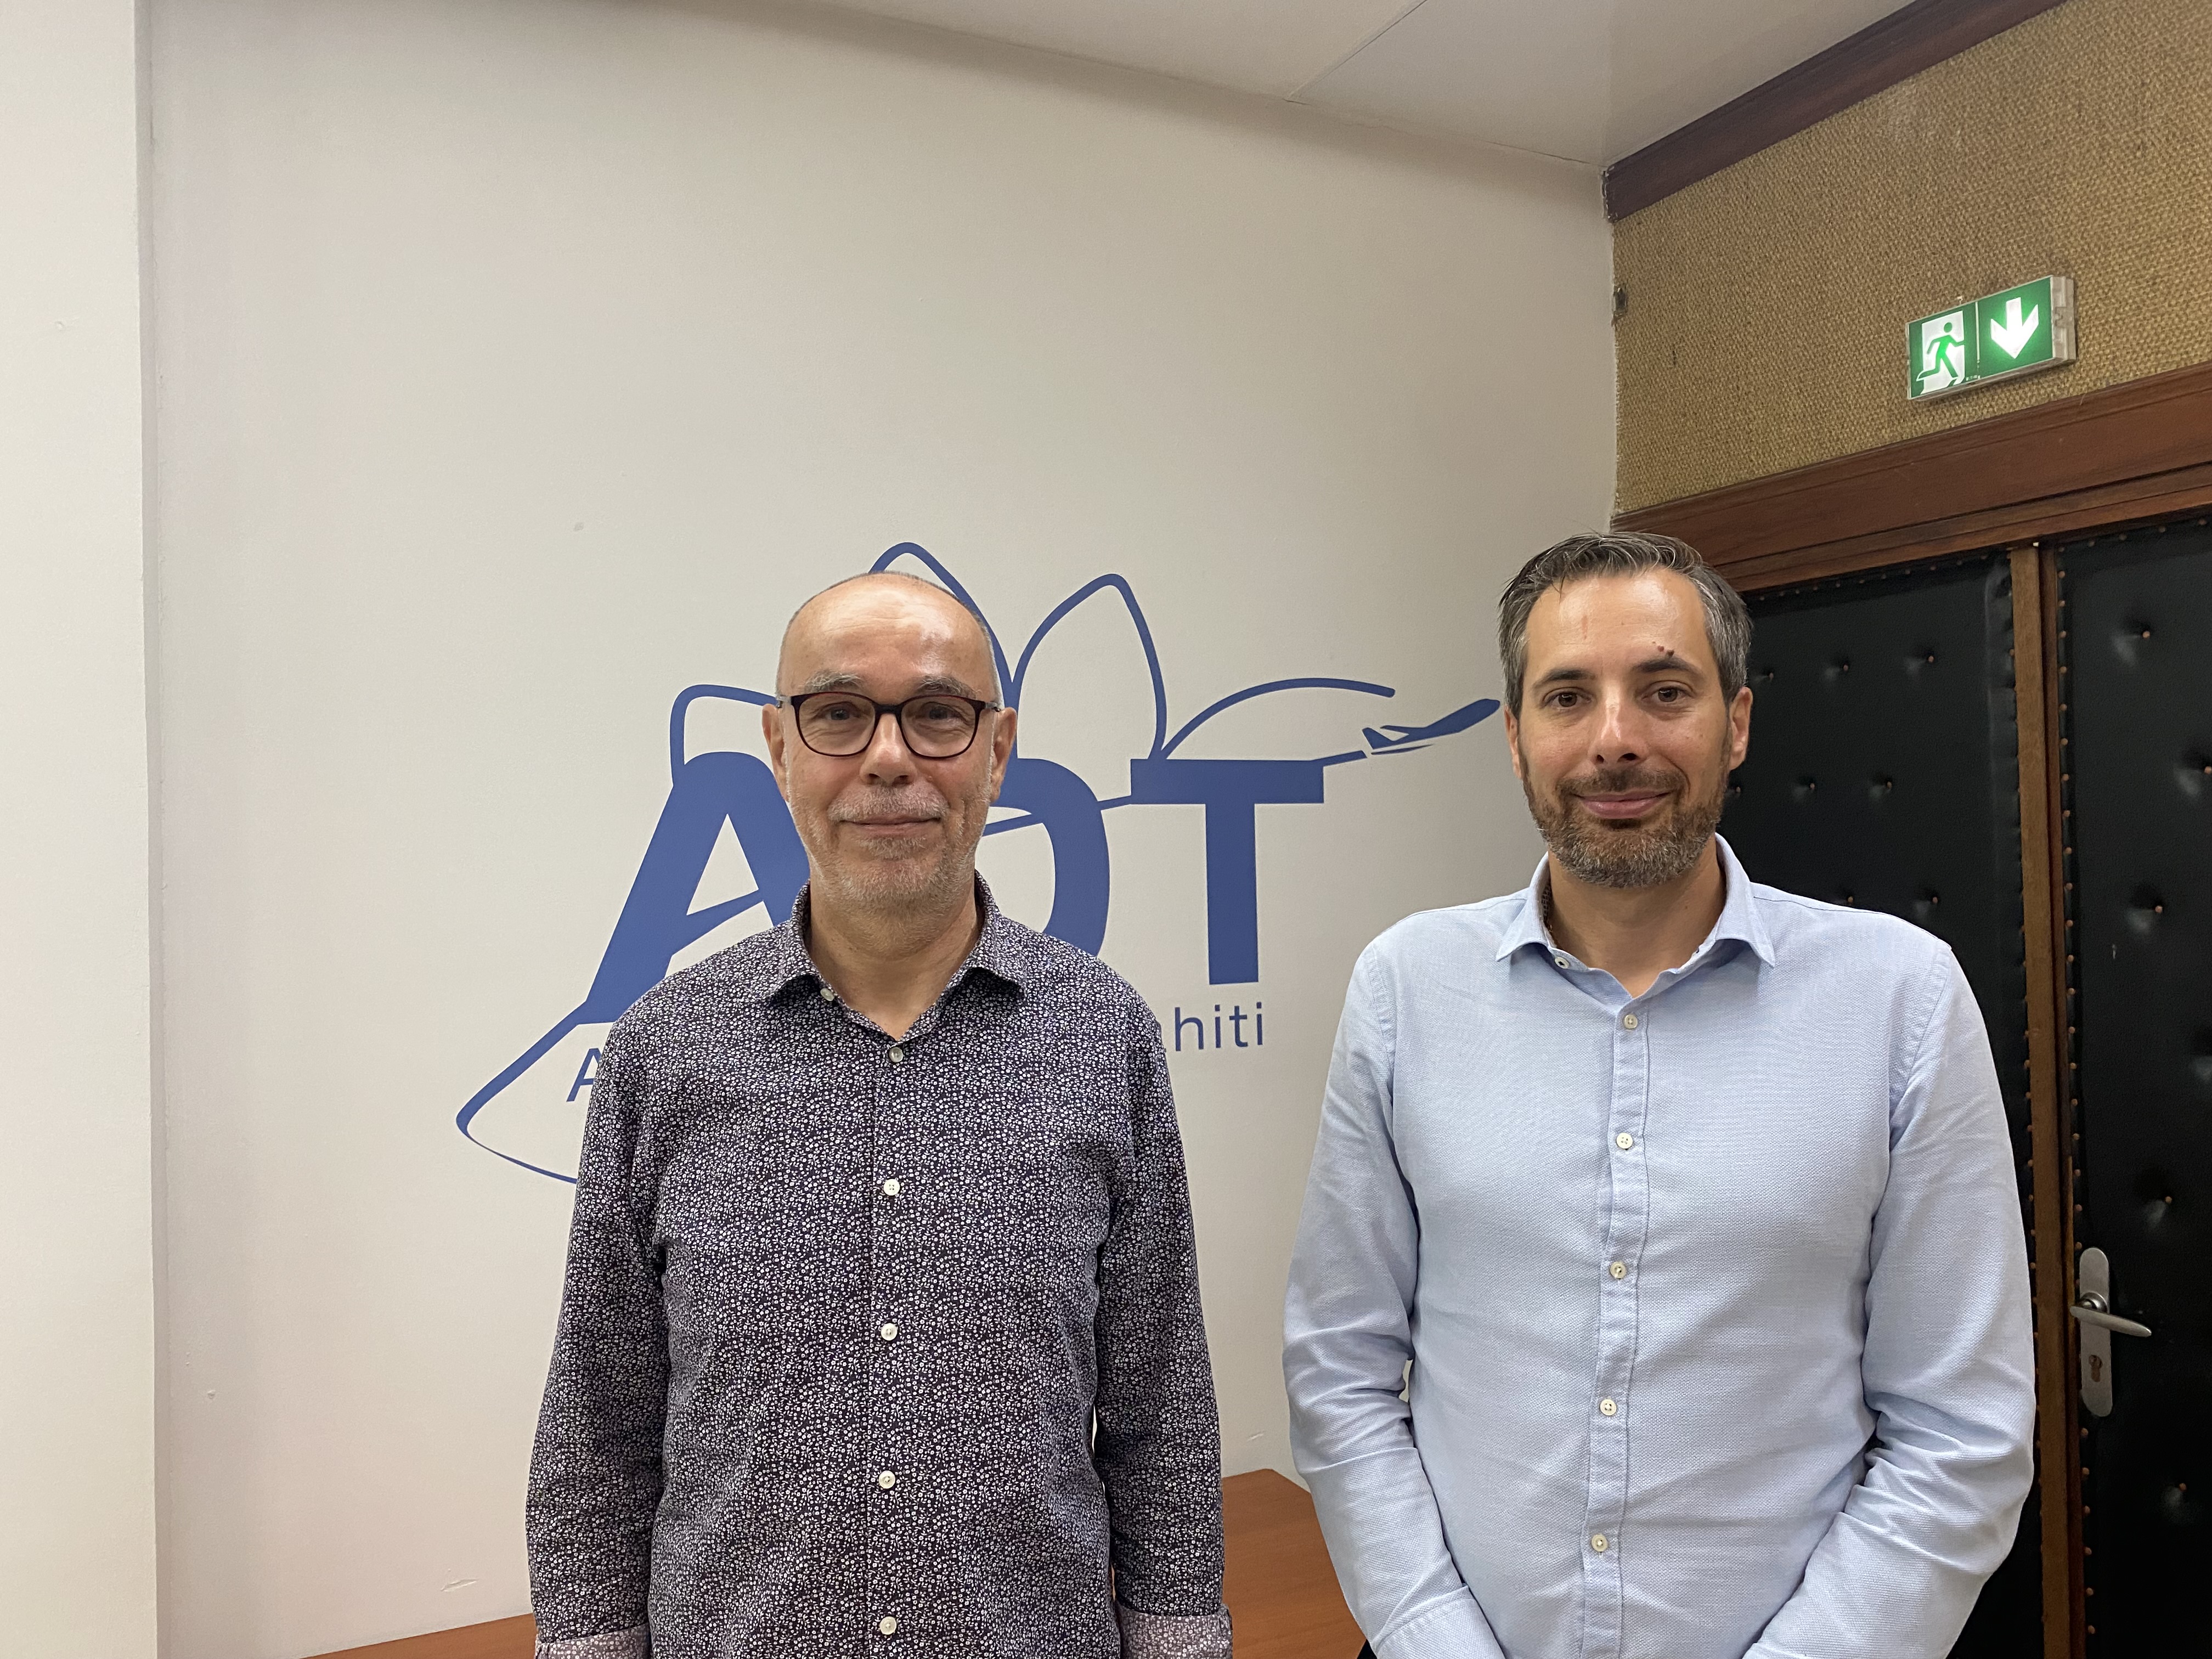 Jean-Michel Ratron, le directeur d'ADT, à gauche, au côté de son futur successeur, Gwenvael Ronsin-Hardy. Crédit photo : Thibault Segalard.